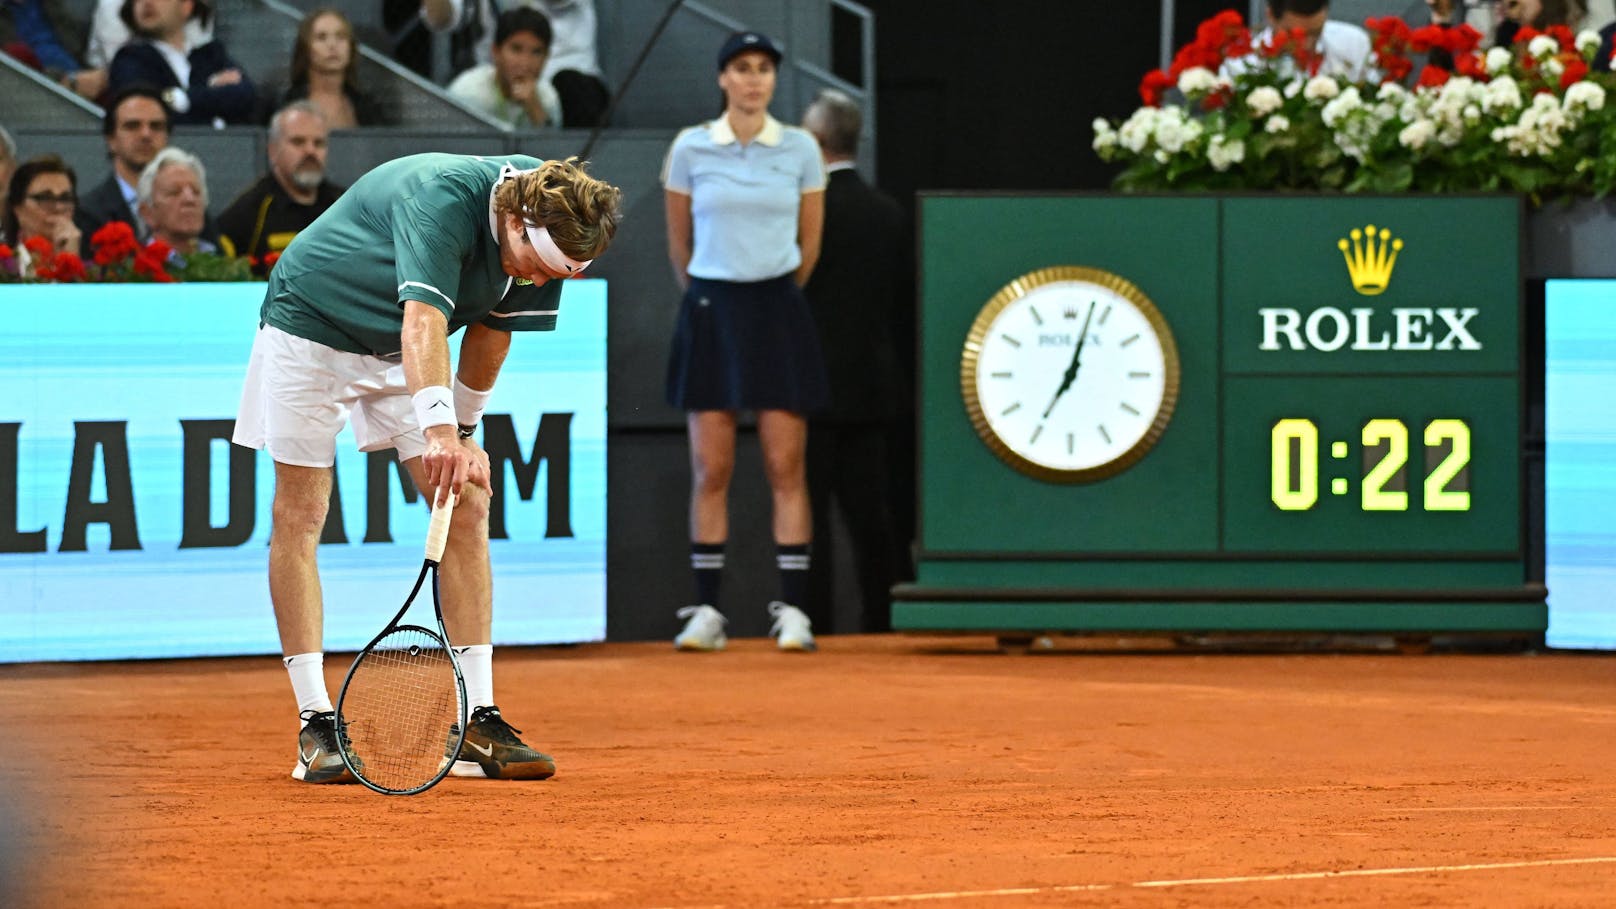 Tennis-Star nach Titel im Spital: "So schlecht gefühlt"